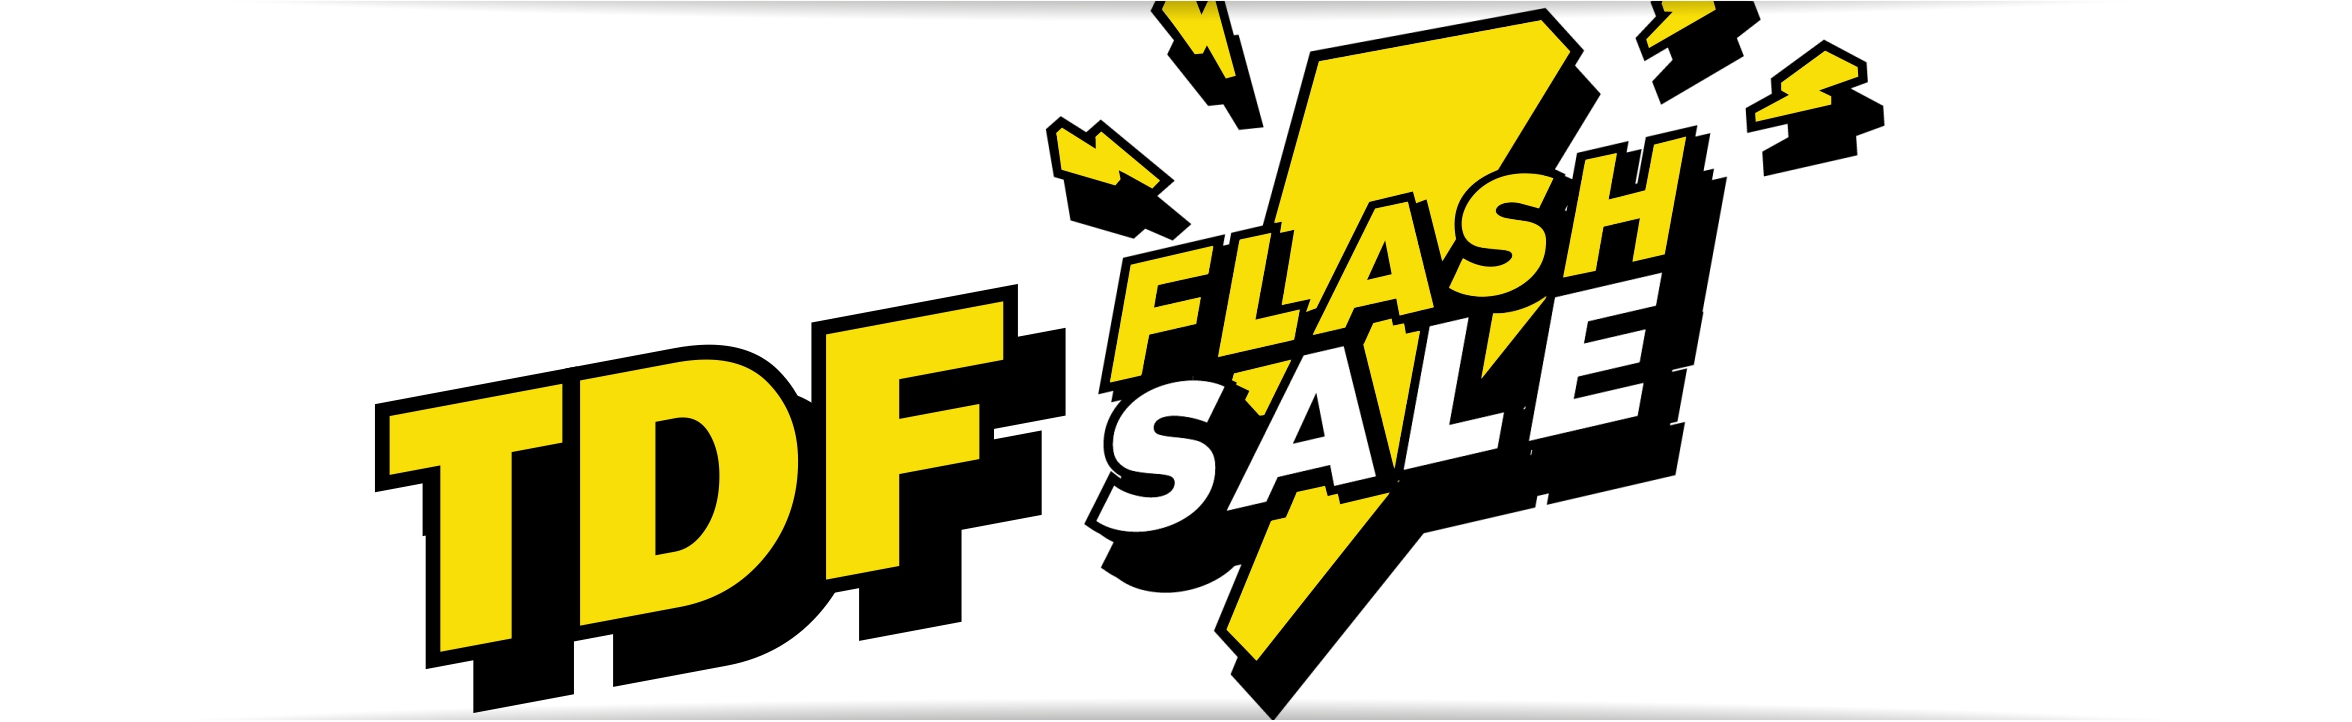 TDF Flash Sale_RON